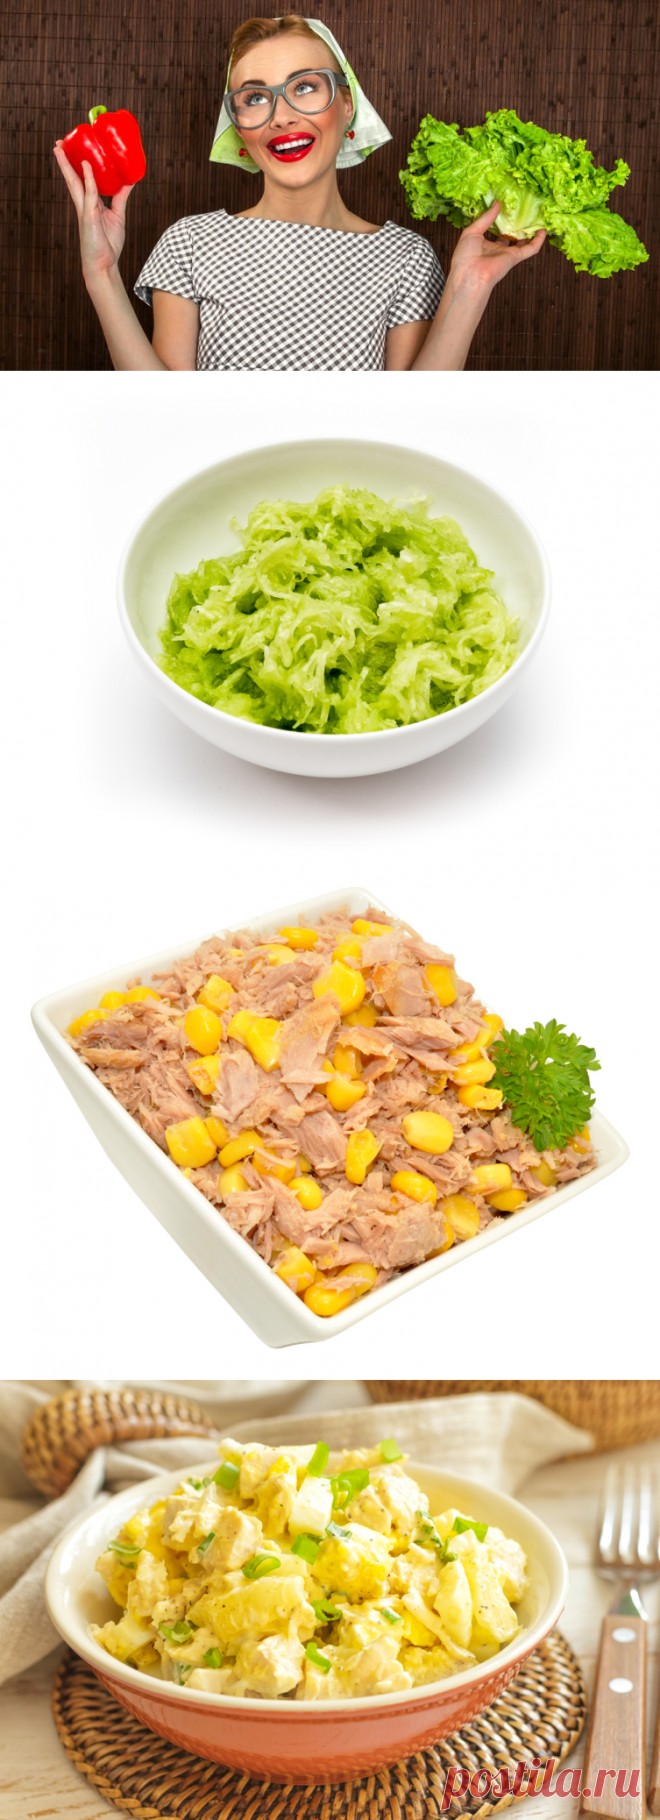 Как сделать вкусный салат из двух ингредиентов? | Еда и кулинария